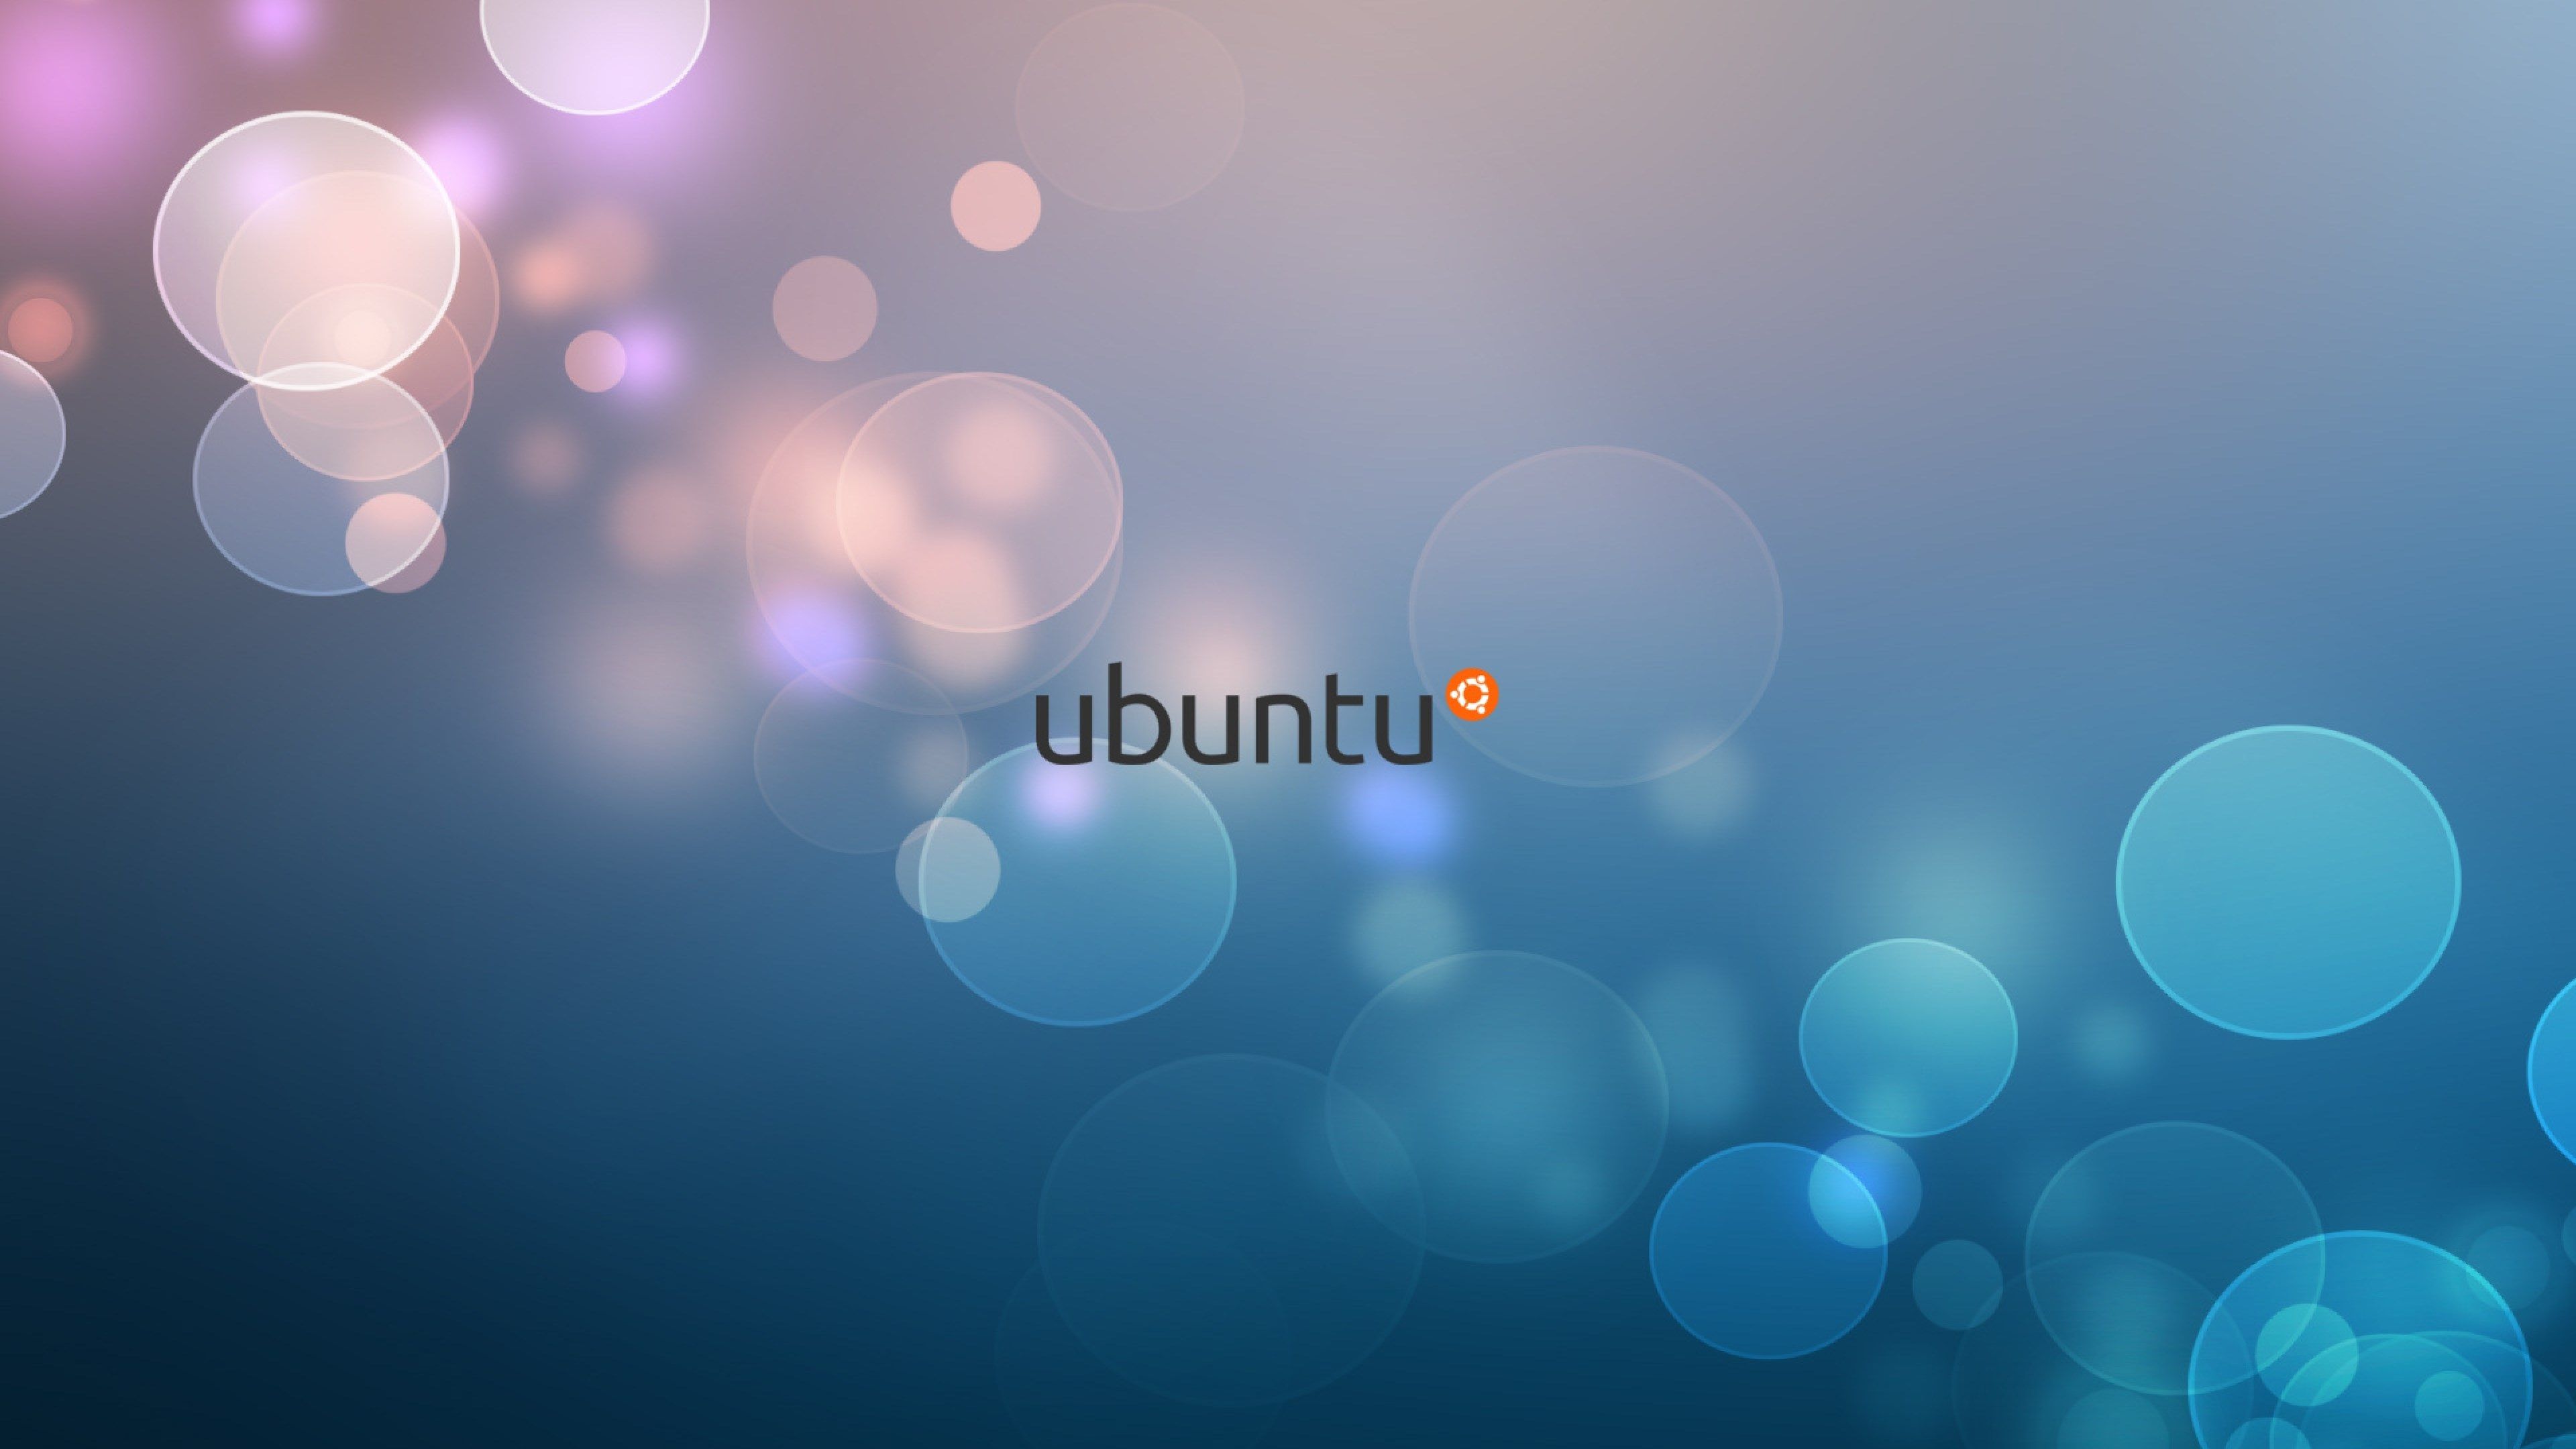 Ubuntu: Không còn phải lo lắng về hệ điều hành của bạn khi Ubuntu đã sẵn sàng chờ đón bạn. Hãy xem hình ảnh liên quan để khám phá thế giới kỳ diệu của Ubuntu.